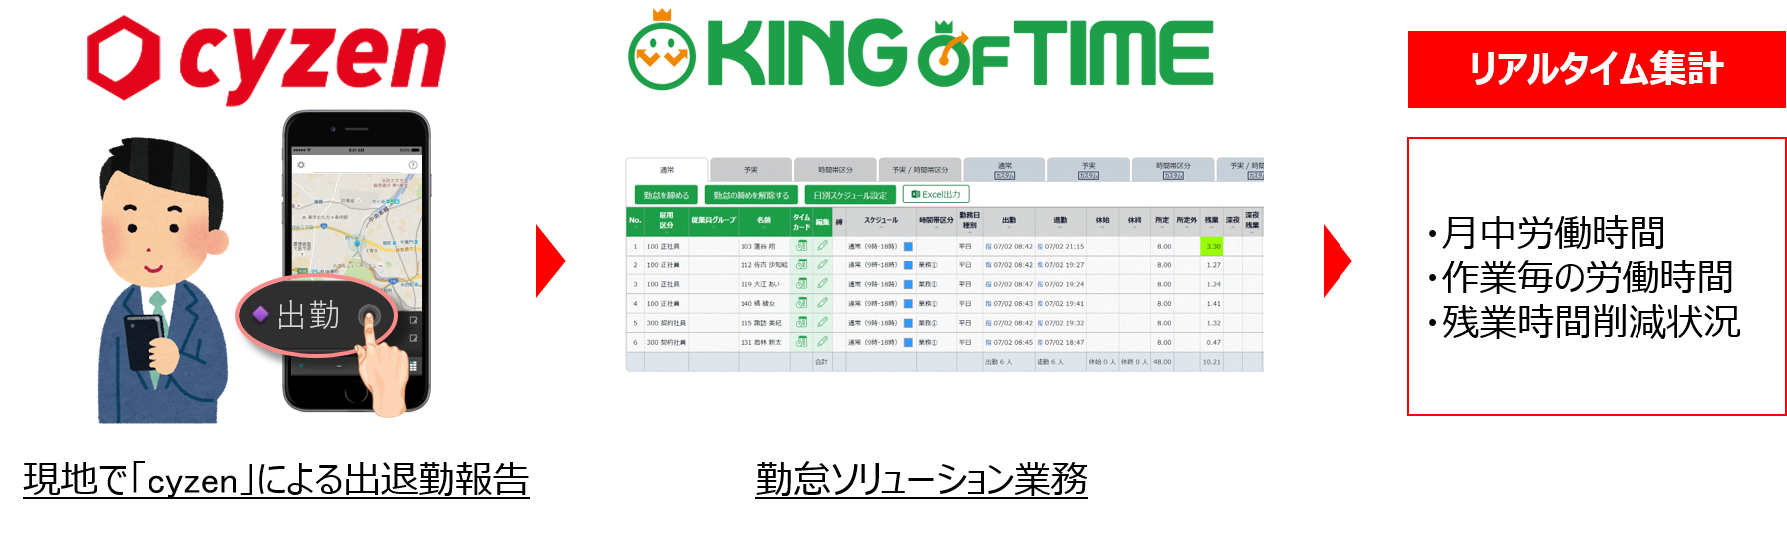 勤怠管理システム「KING OF TIME」、働き方改革アプリ「cyzen」とAPI連携を開始